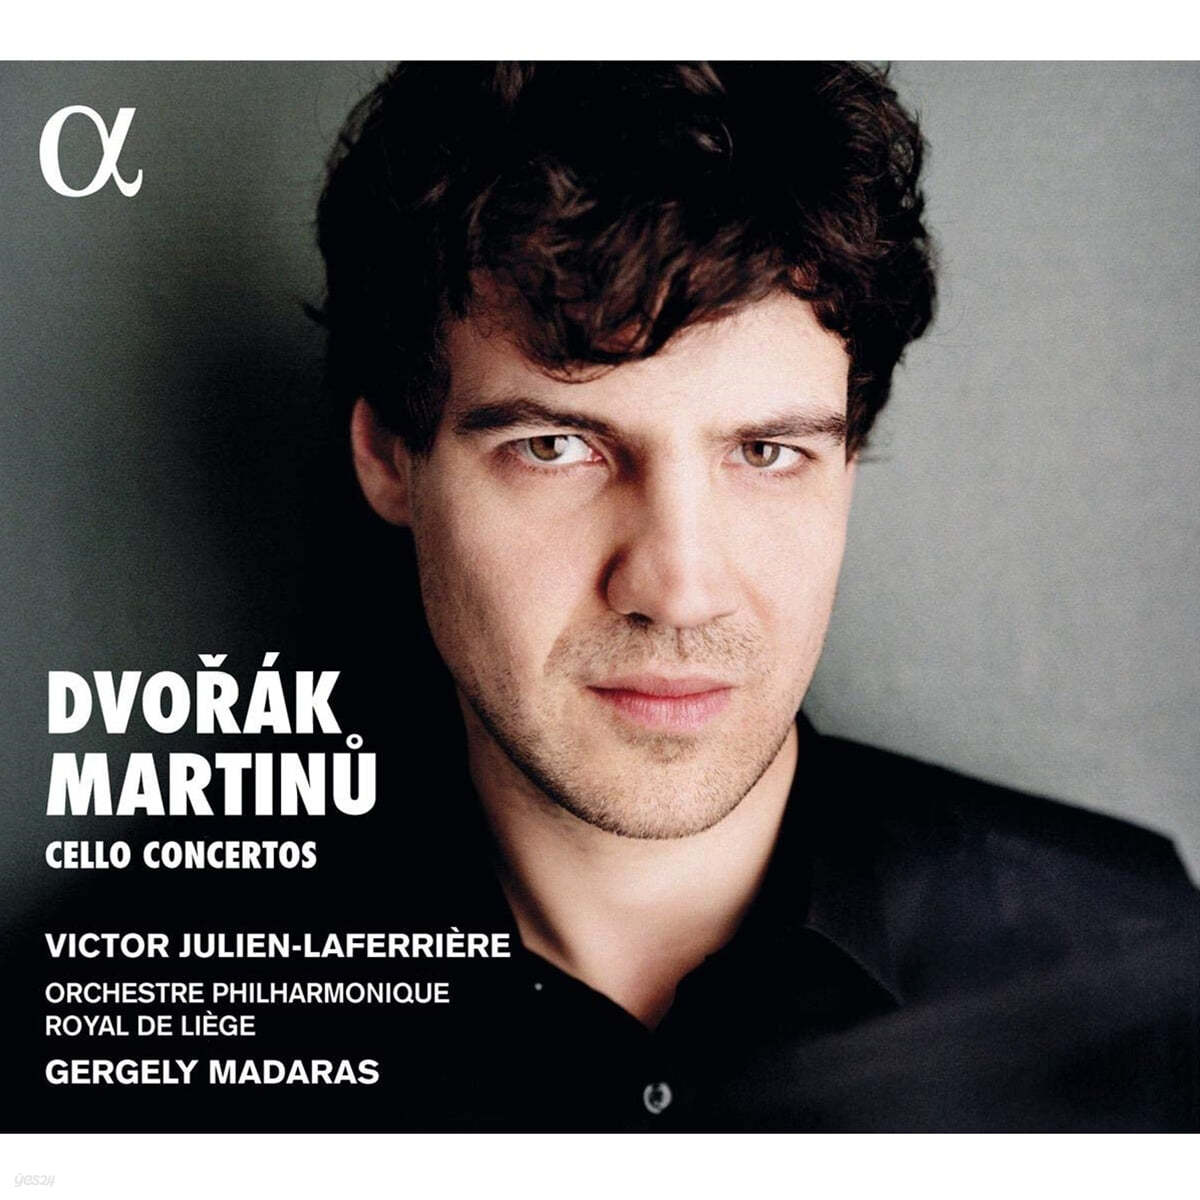 Victor Julien-Laferriere 드보르작 / 마르티누: 첼로 협주곡 (Dvorak: Cello Concerto Op.104 / Martinu: Cello Concerto No.1 H.196)